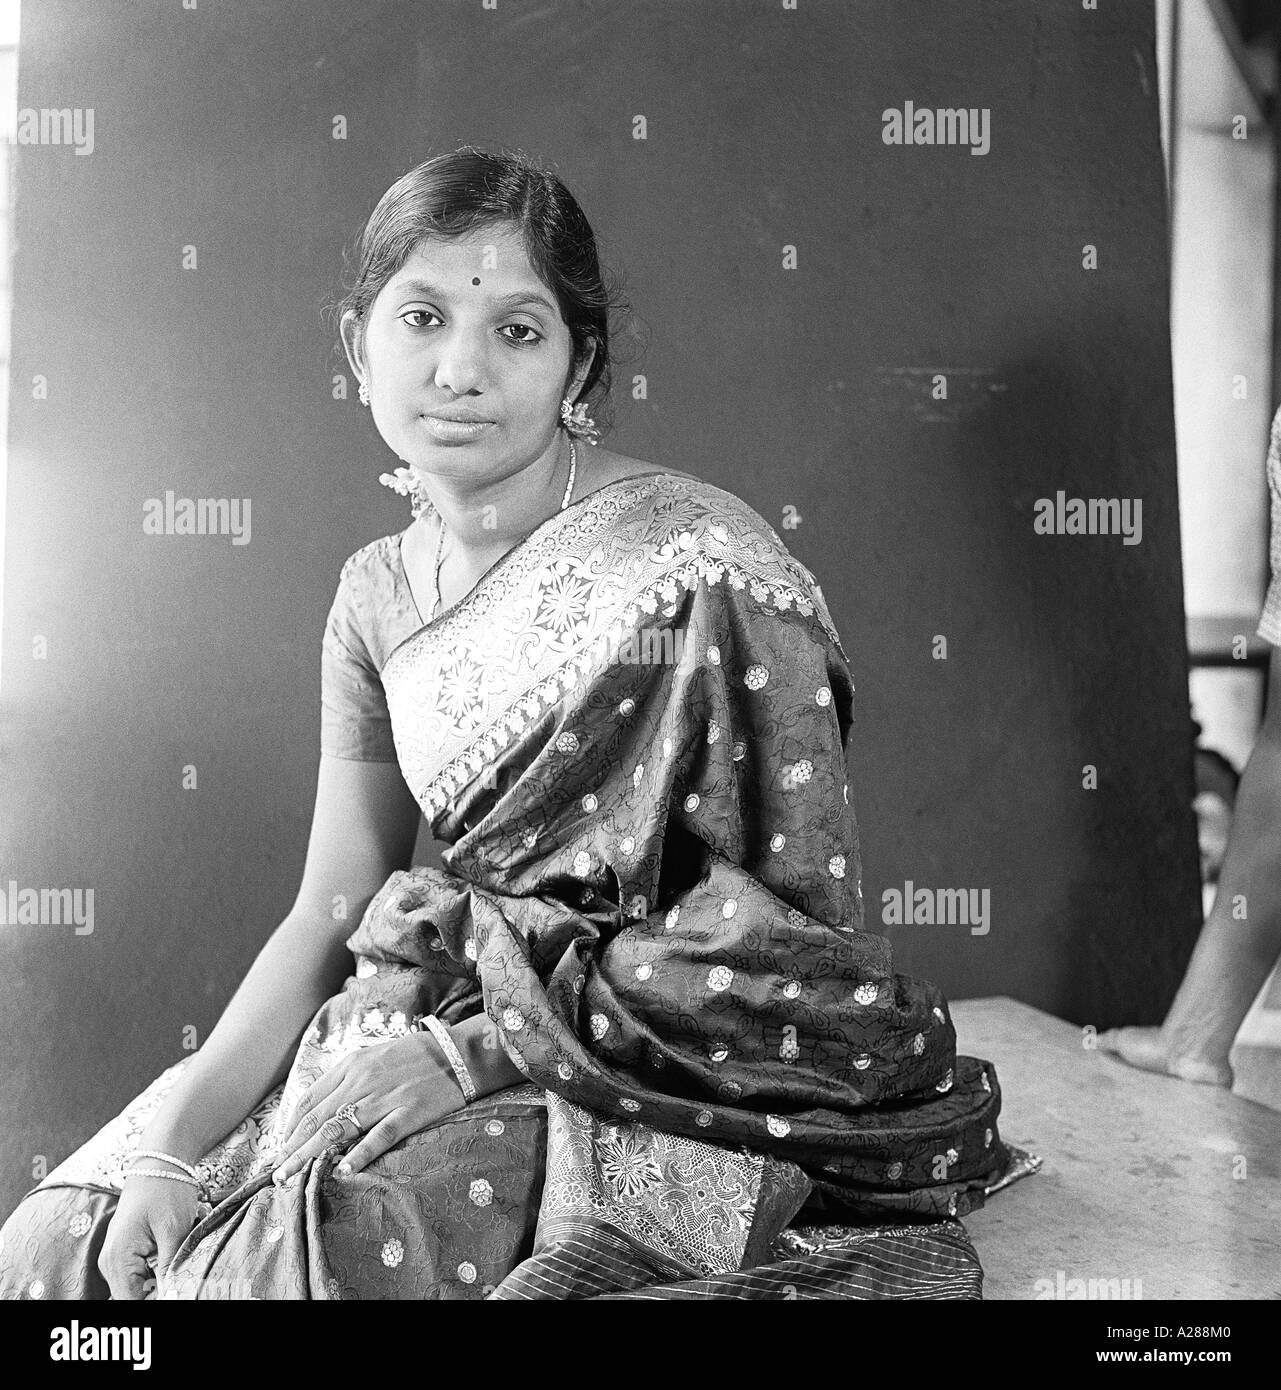 Femme indienne portant de la soie sari studio portrait Inde Asie Indien asiatique MR#777A Old vintage 1900s image dpa 76612 maa Banque D'Images